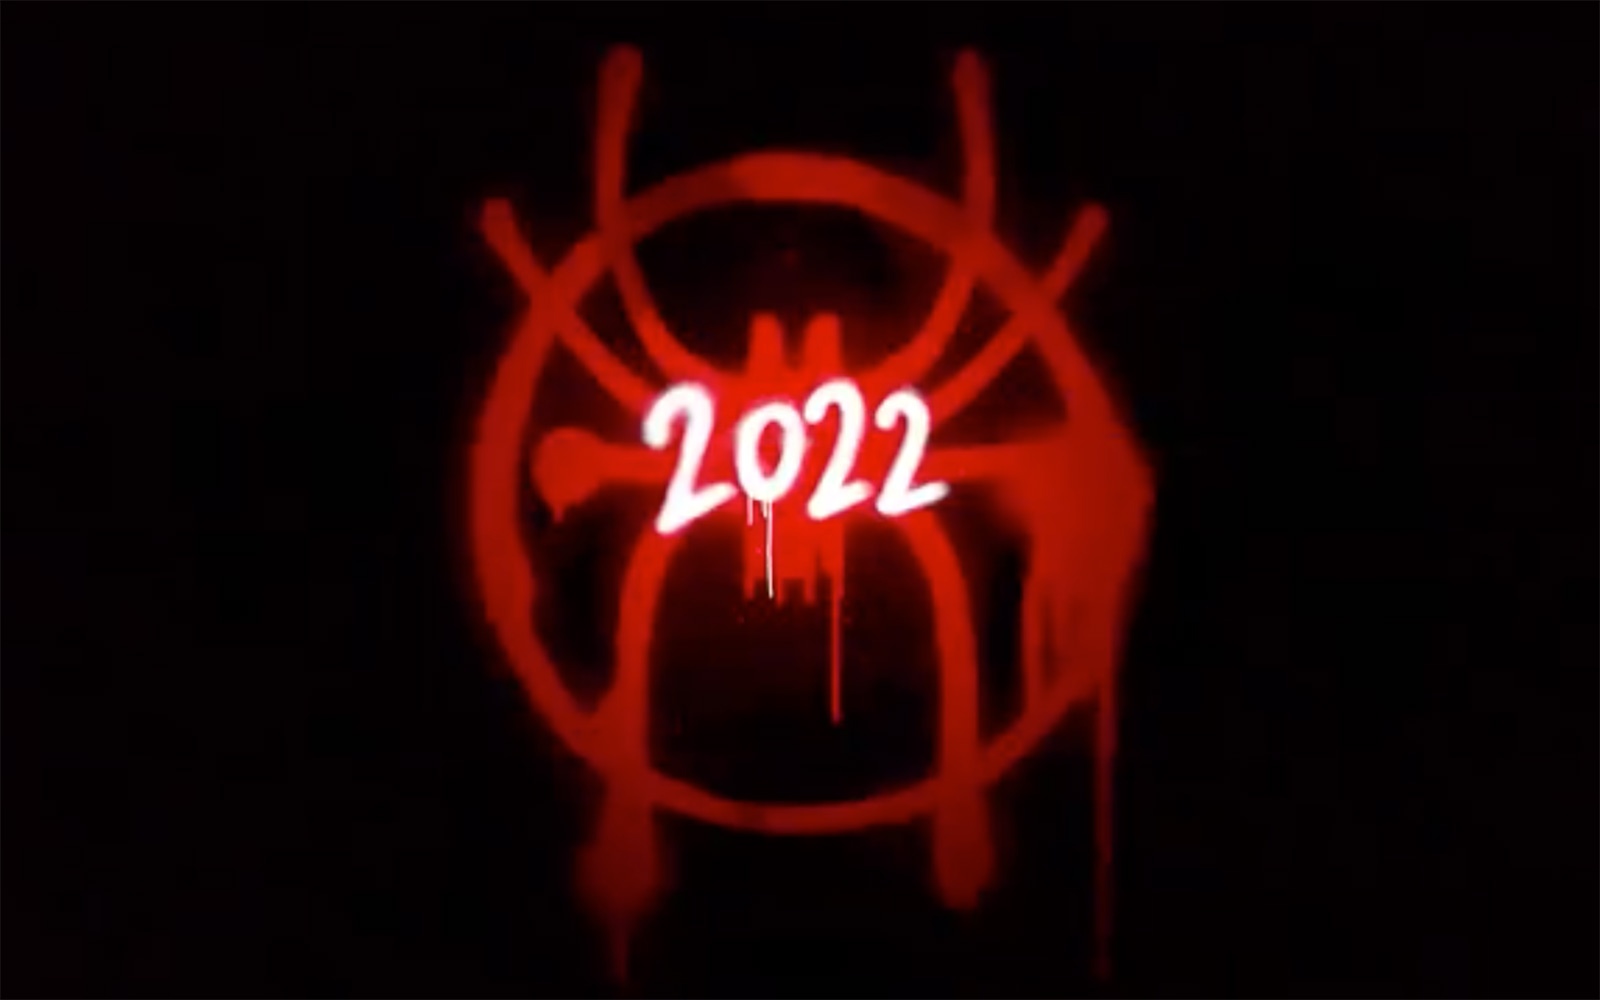 Spider-Verse 2, 2022